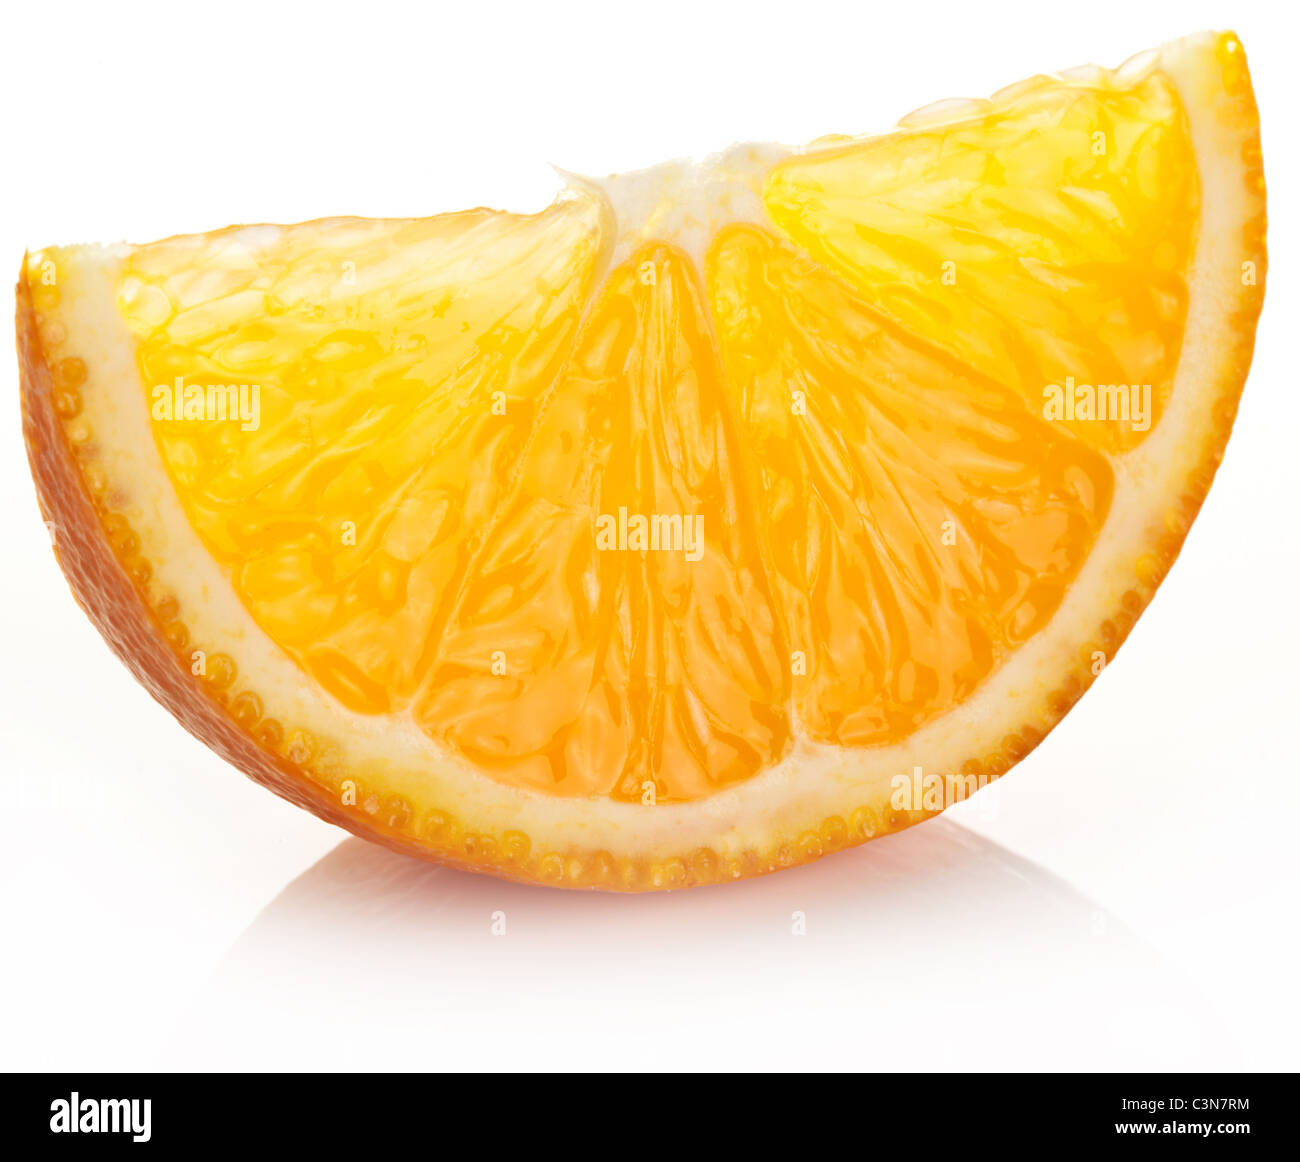 Orange slice on a white background. Stock Photo